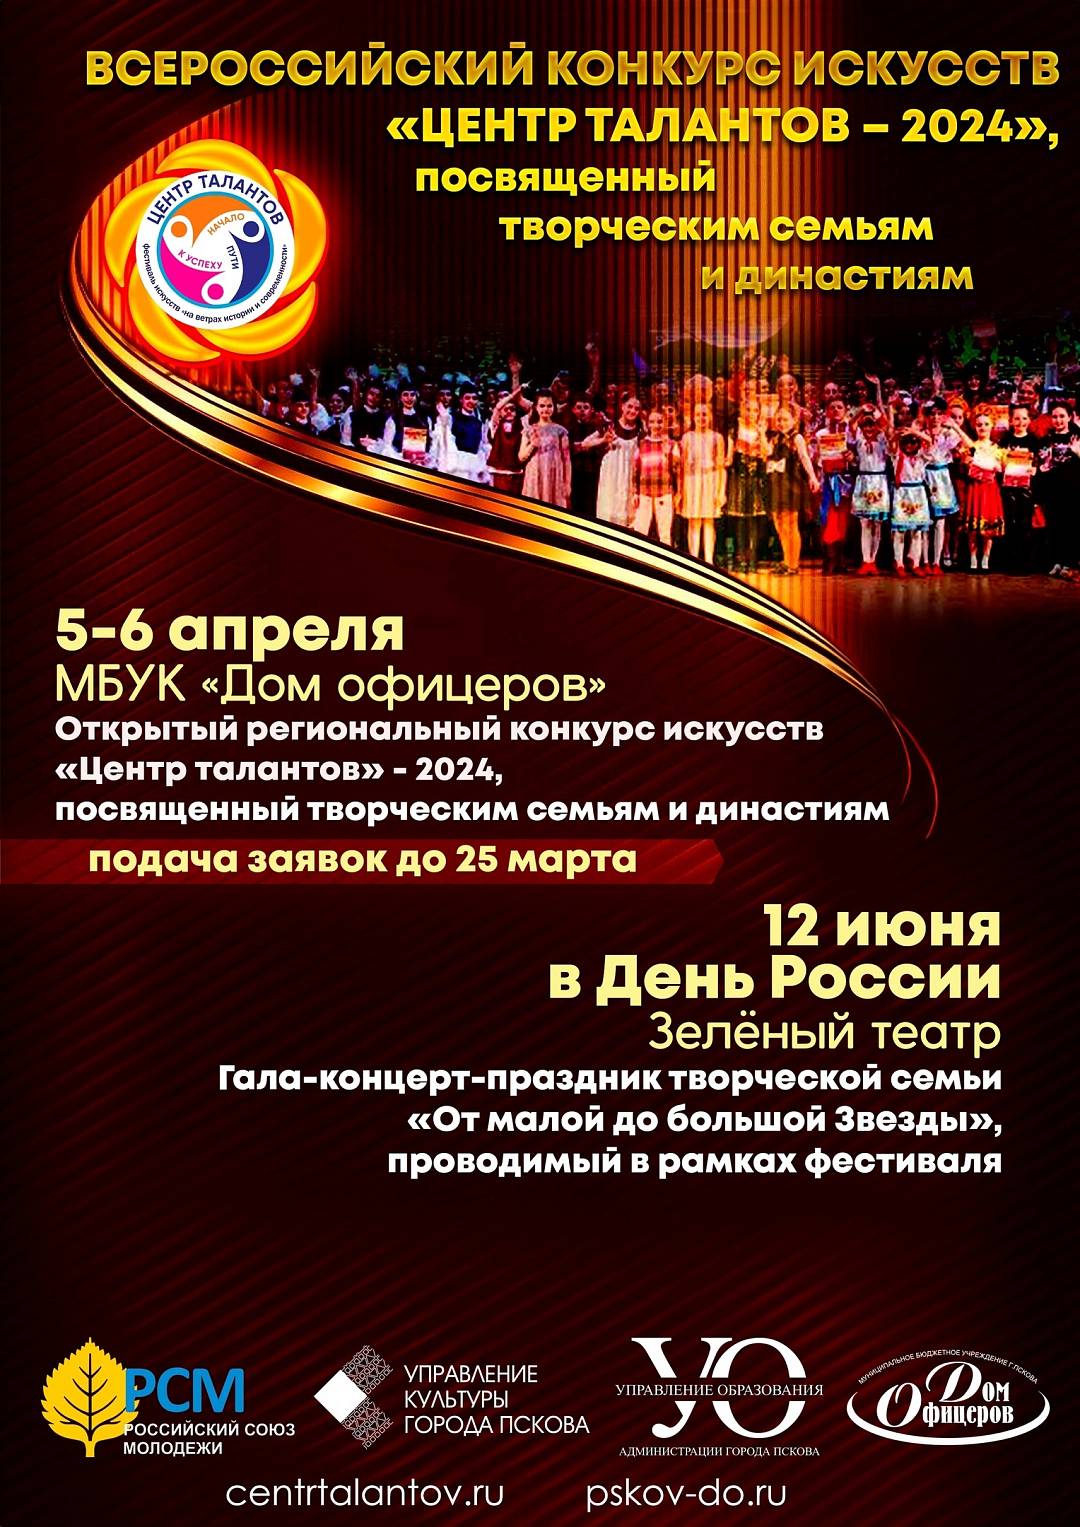 Открытый региональный конкурс искусств "Центр талантов" - 2024, посвященный творческим семьям и династиям.